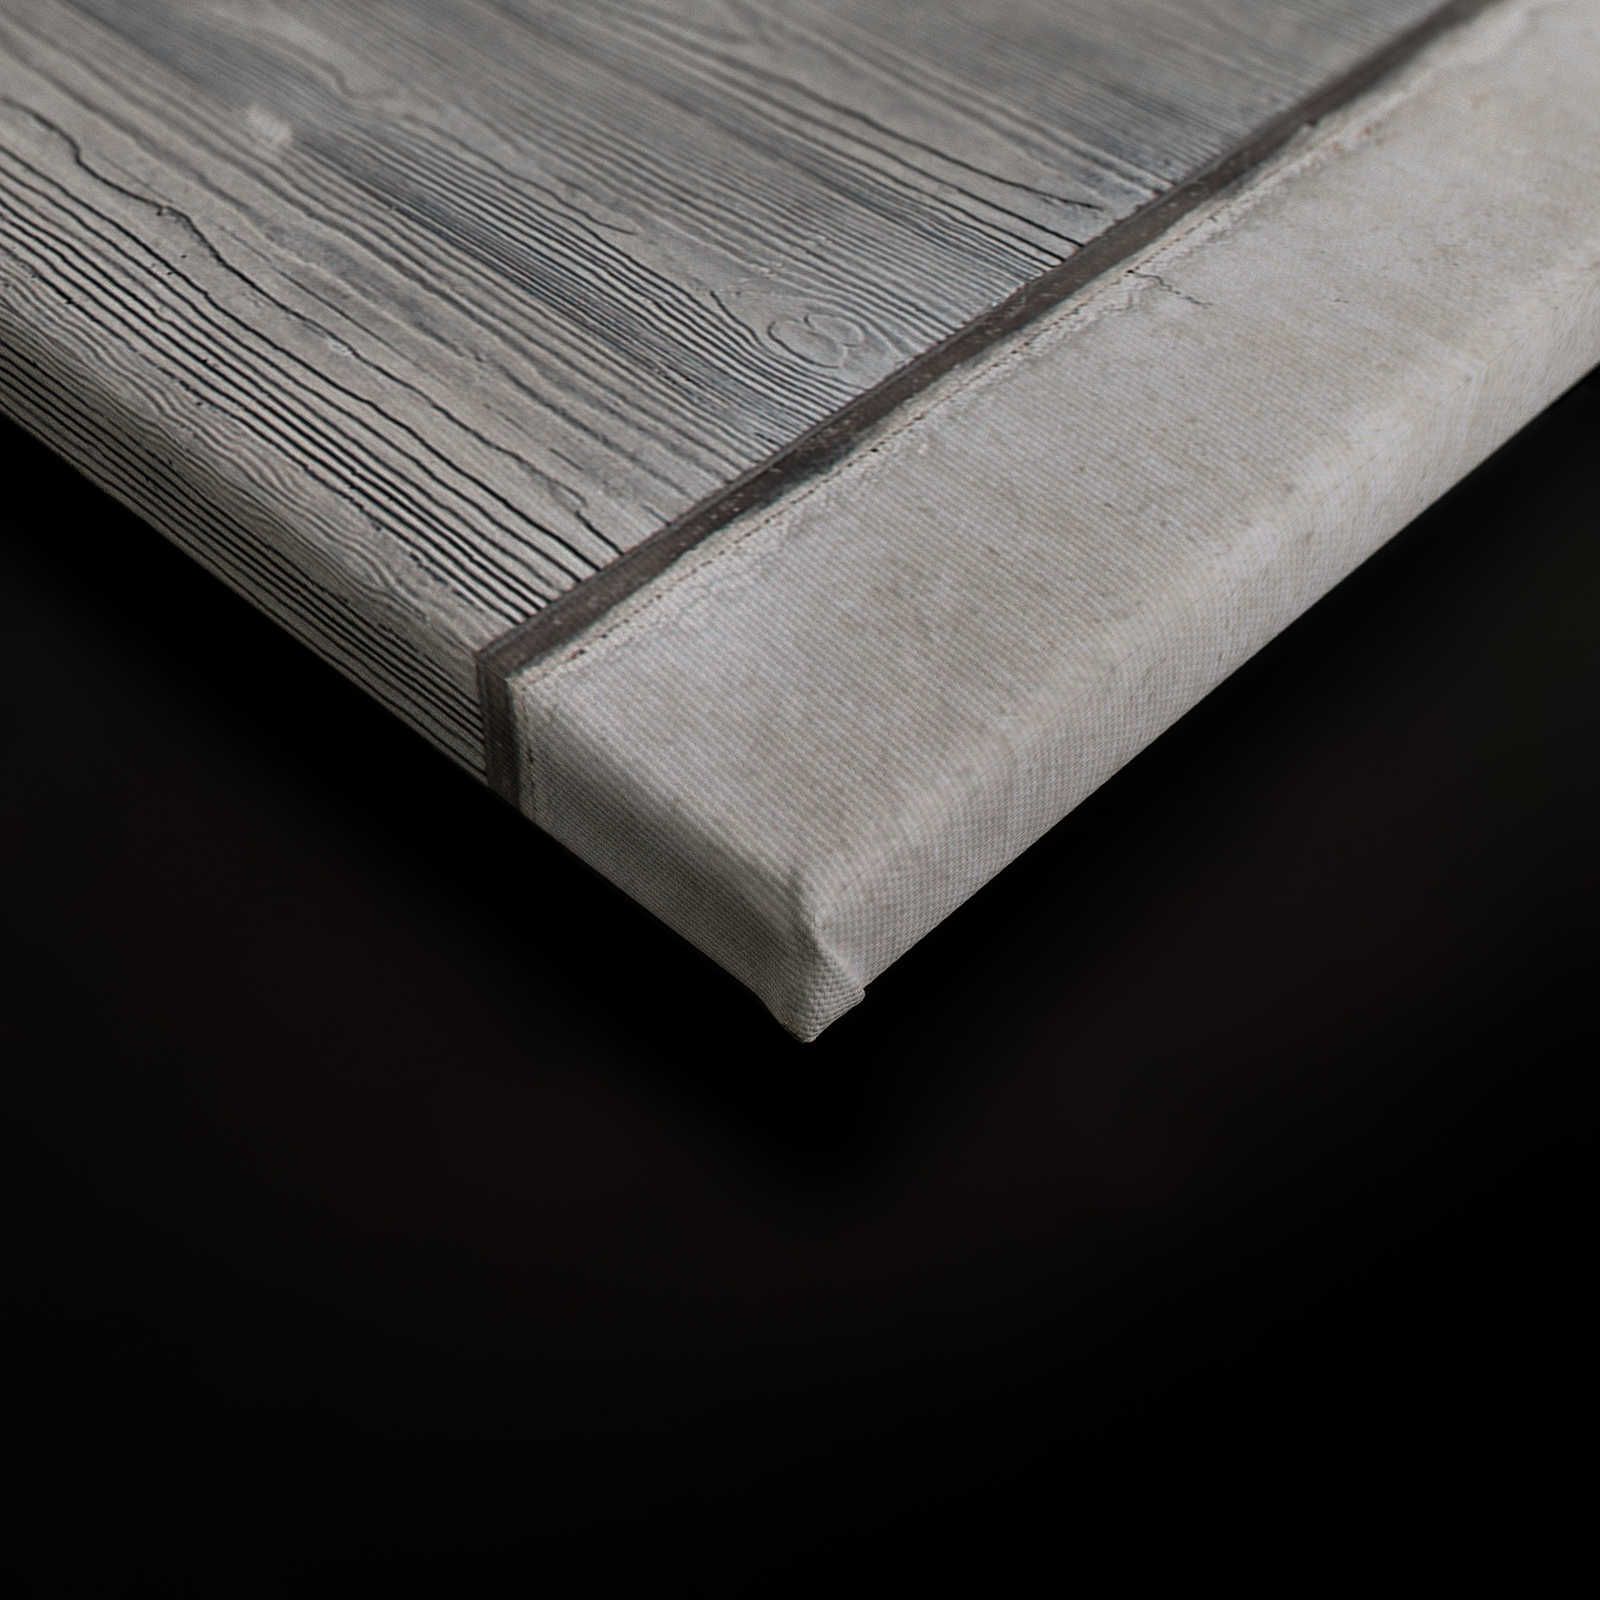             Cuadro de lienzo de losa de hormigón con encofrado de tablas y veta de madera - 0,90 m x 0,60 m
        